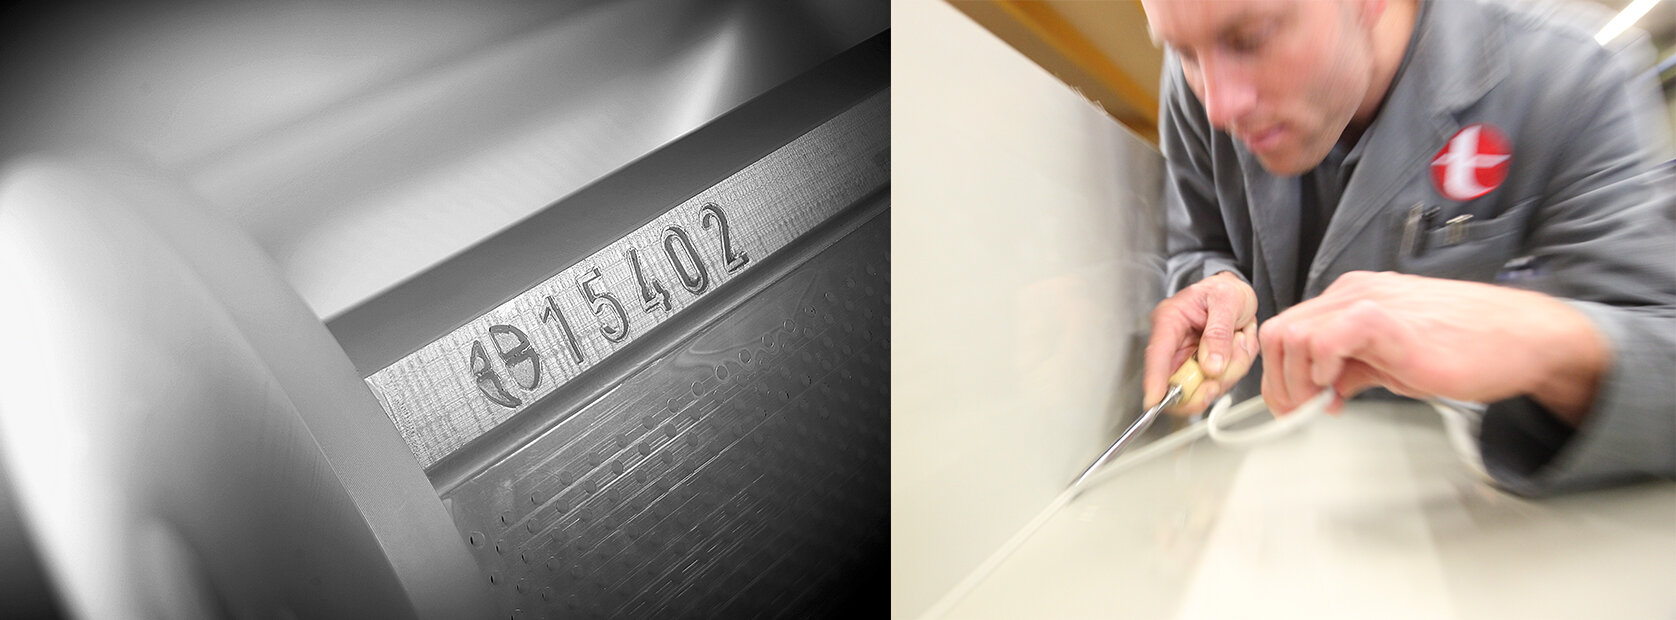 Links Galvanisiertrommel mit eingeprägter Tscherwitschke Nummer rechts Mitarbeiter in der Produktion arbeitet an einer Schweißnaht | © Richard Tscherwitschke GmbH